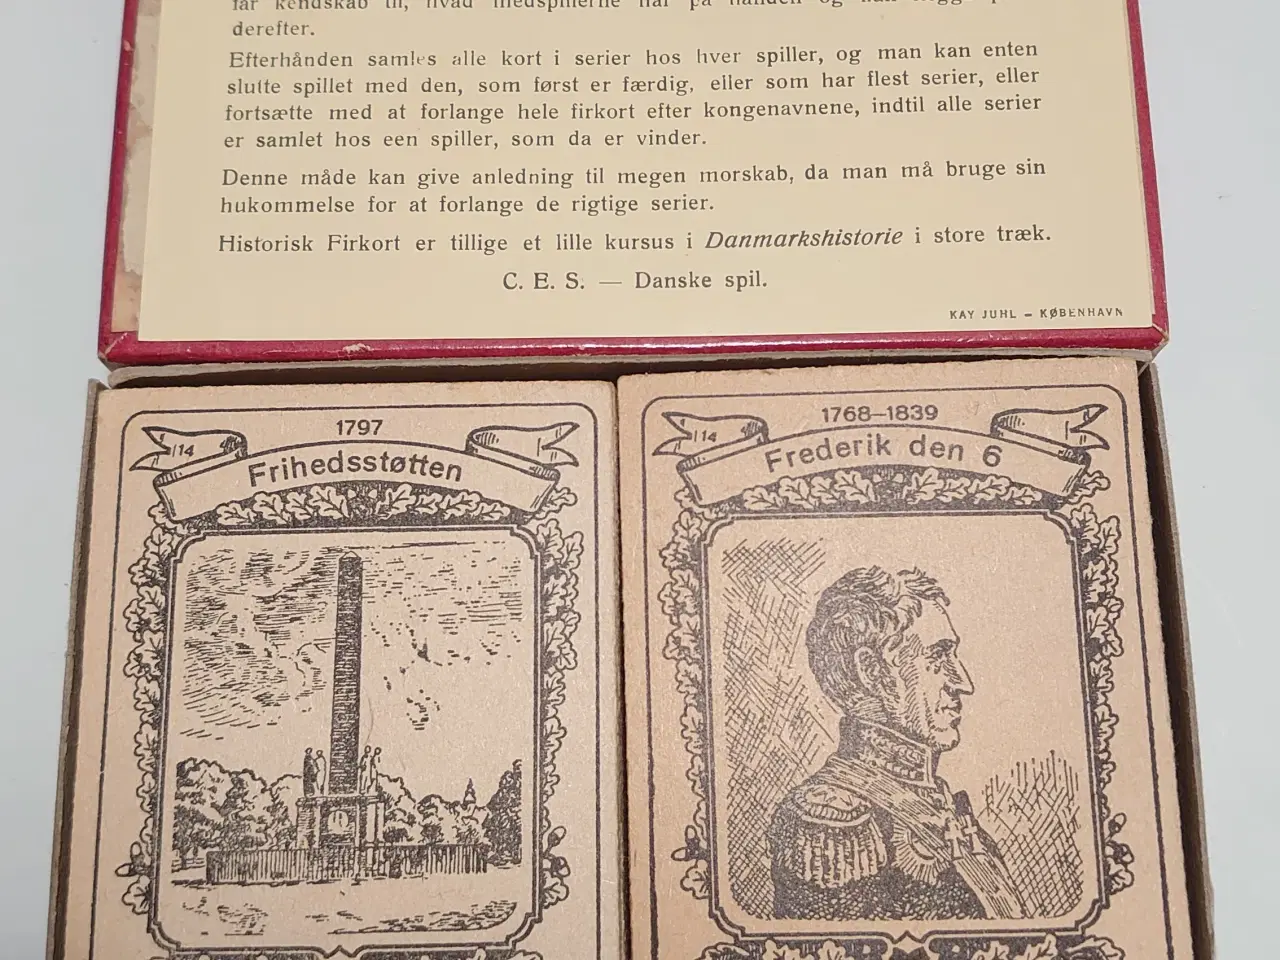 Billede 2 - Historisk Firkort. Vintage kortspil fra CES nr 24.